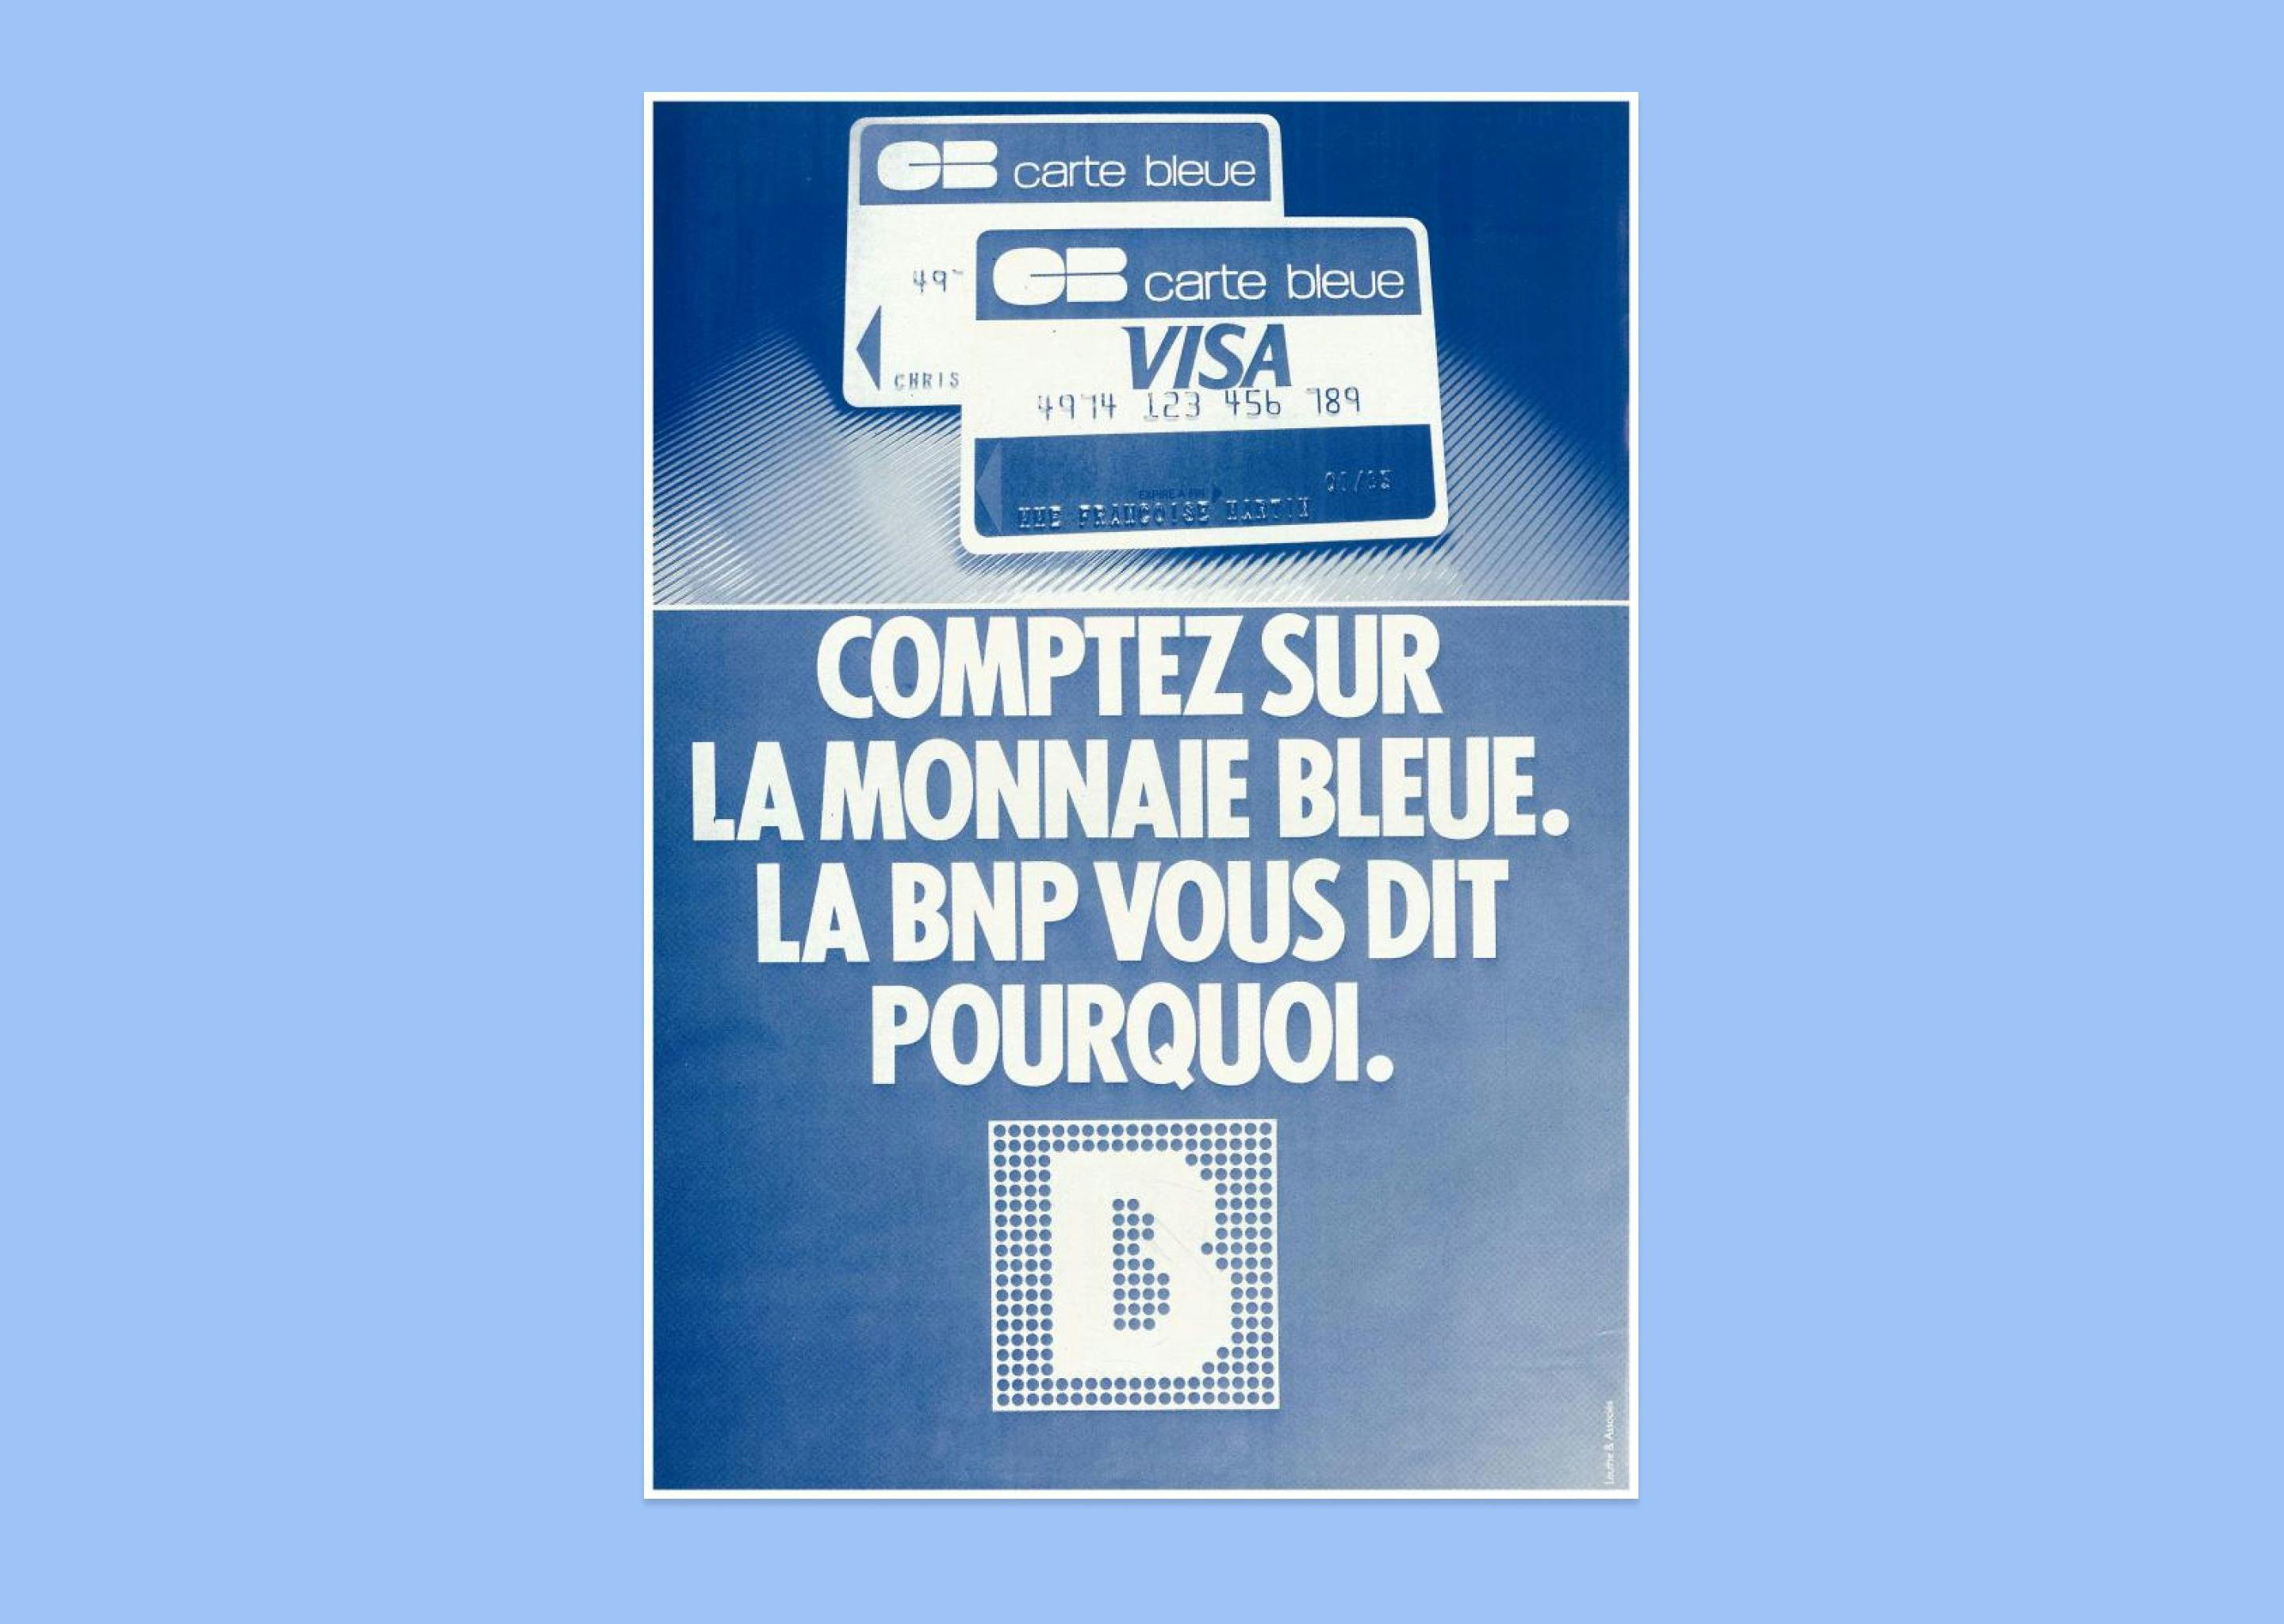 Publicité de la BNP expliquant que la carte bleue est en fait de la monnaie bleue (début des années 1980) — Archives BNP